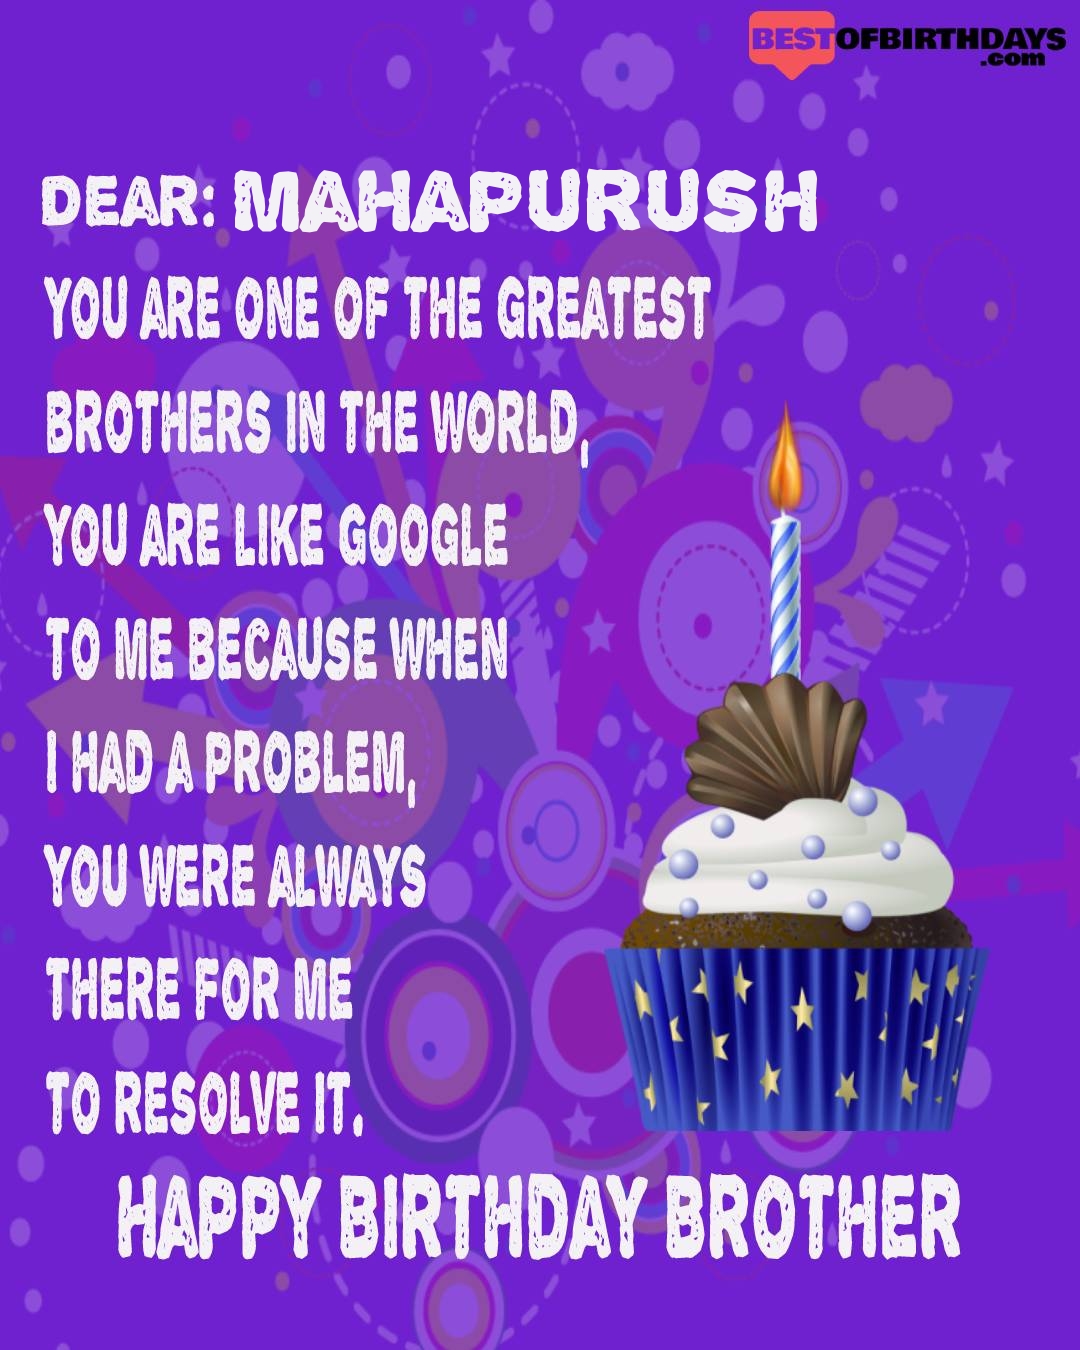 Happy birthday mahapurush bhai brother bro